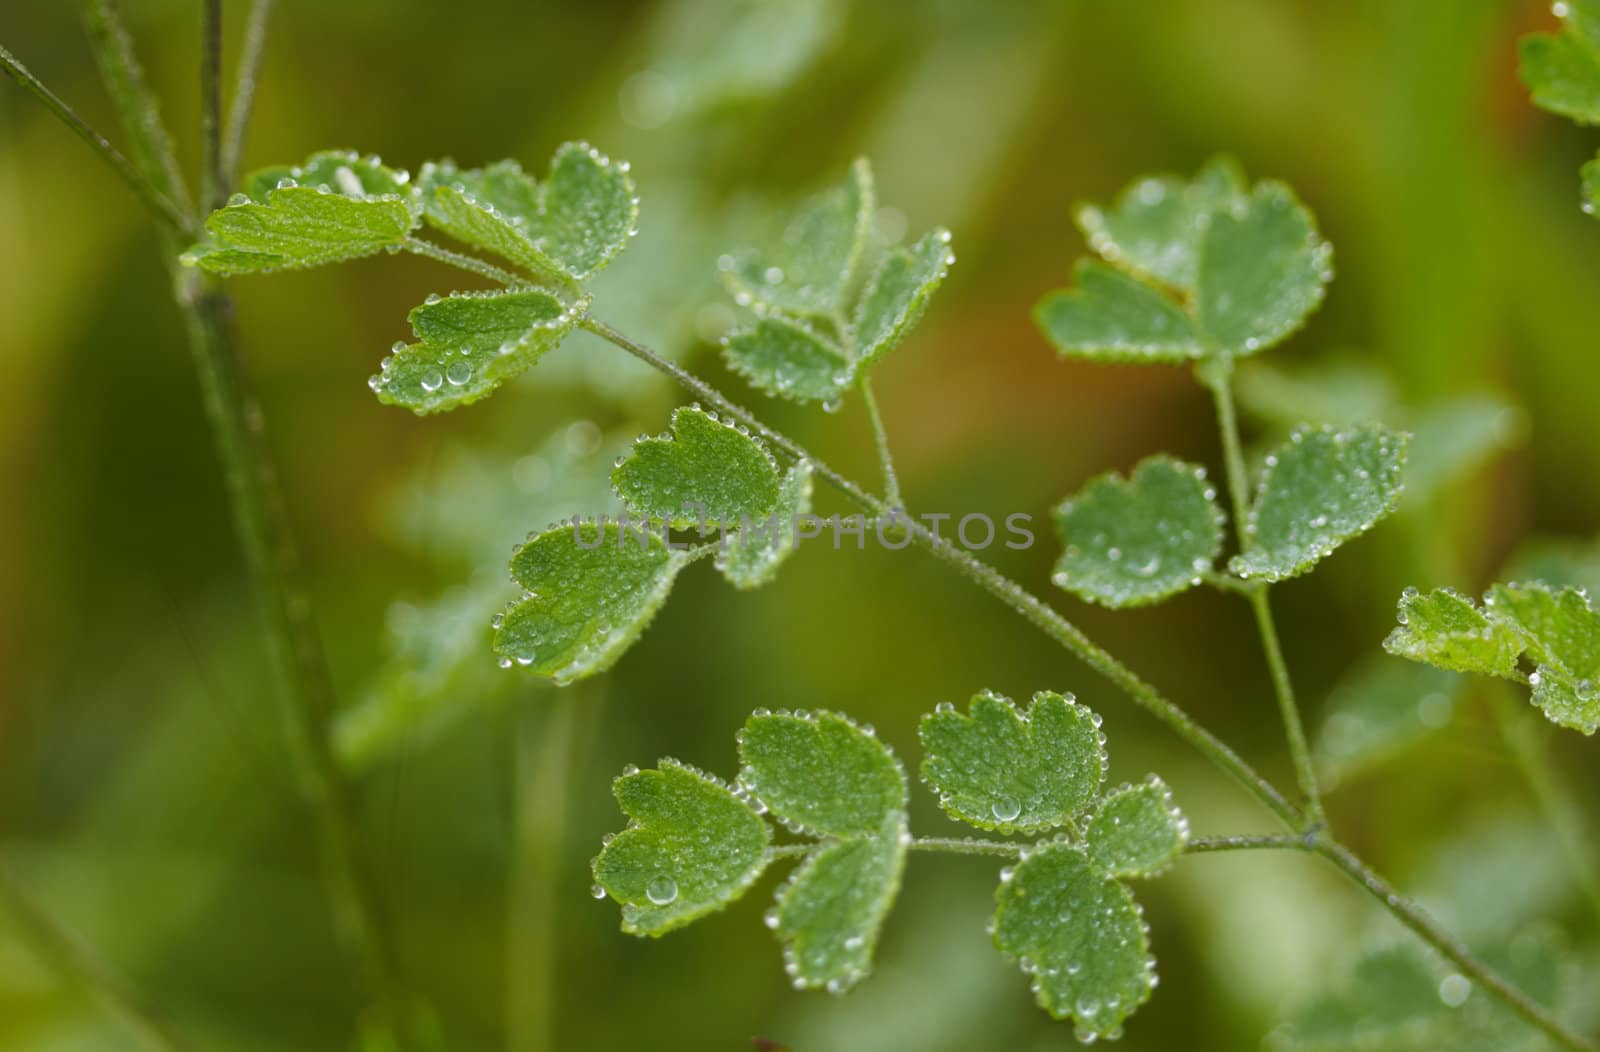 Water-drops on leaves by Nikonas